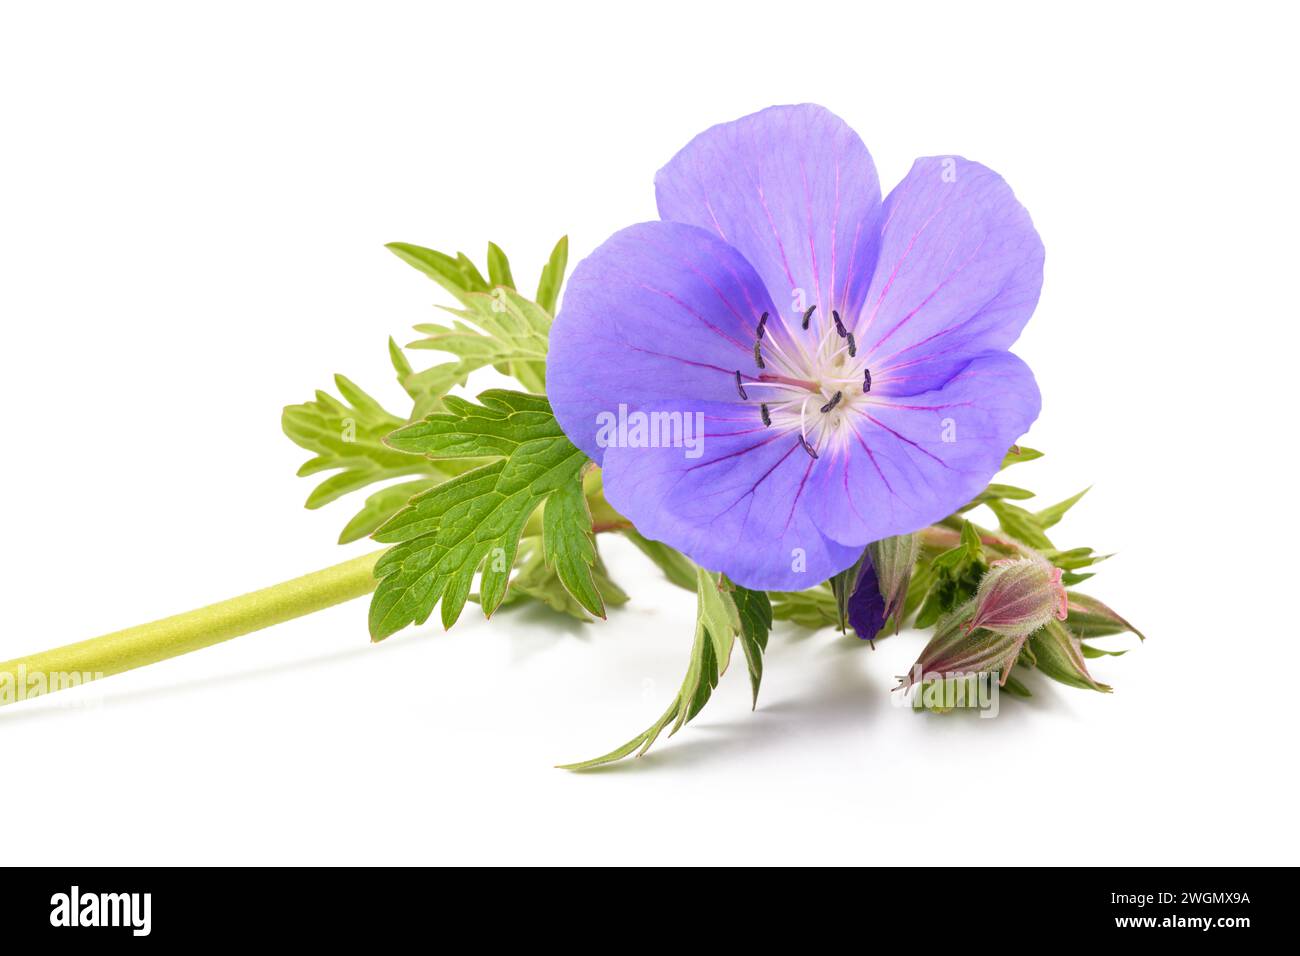 Geranium flower  isolated on white background Stock Photo